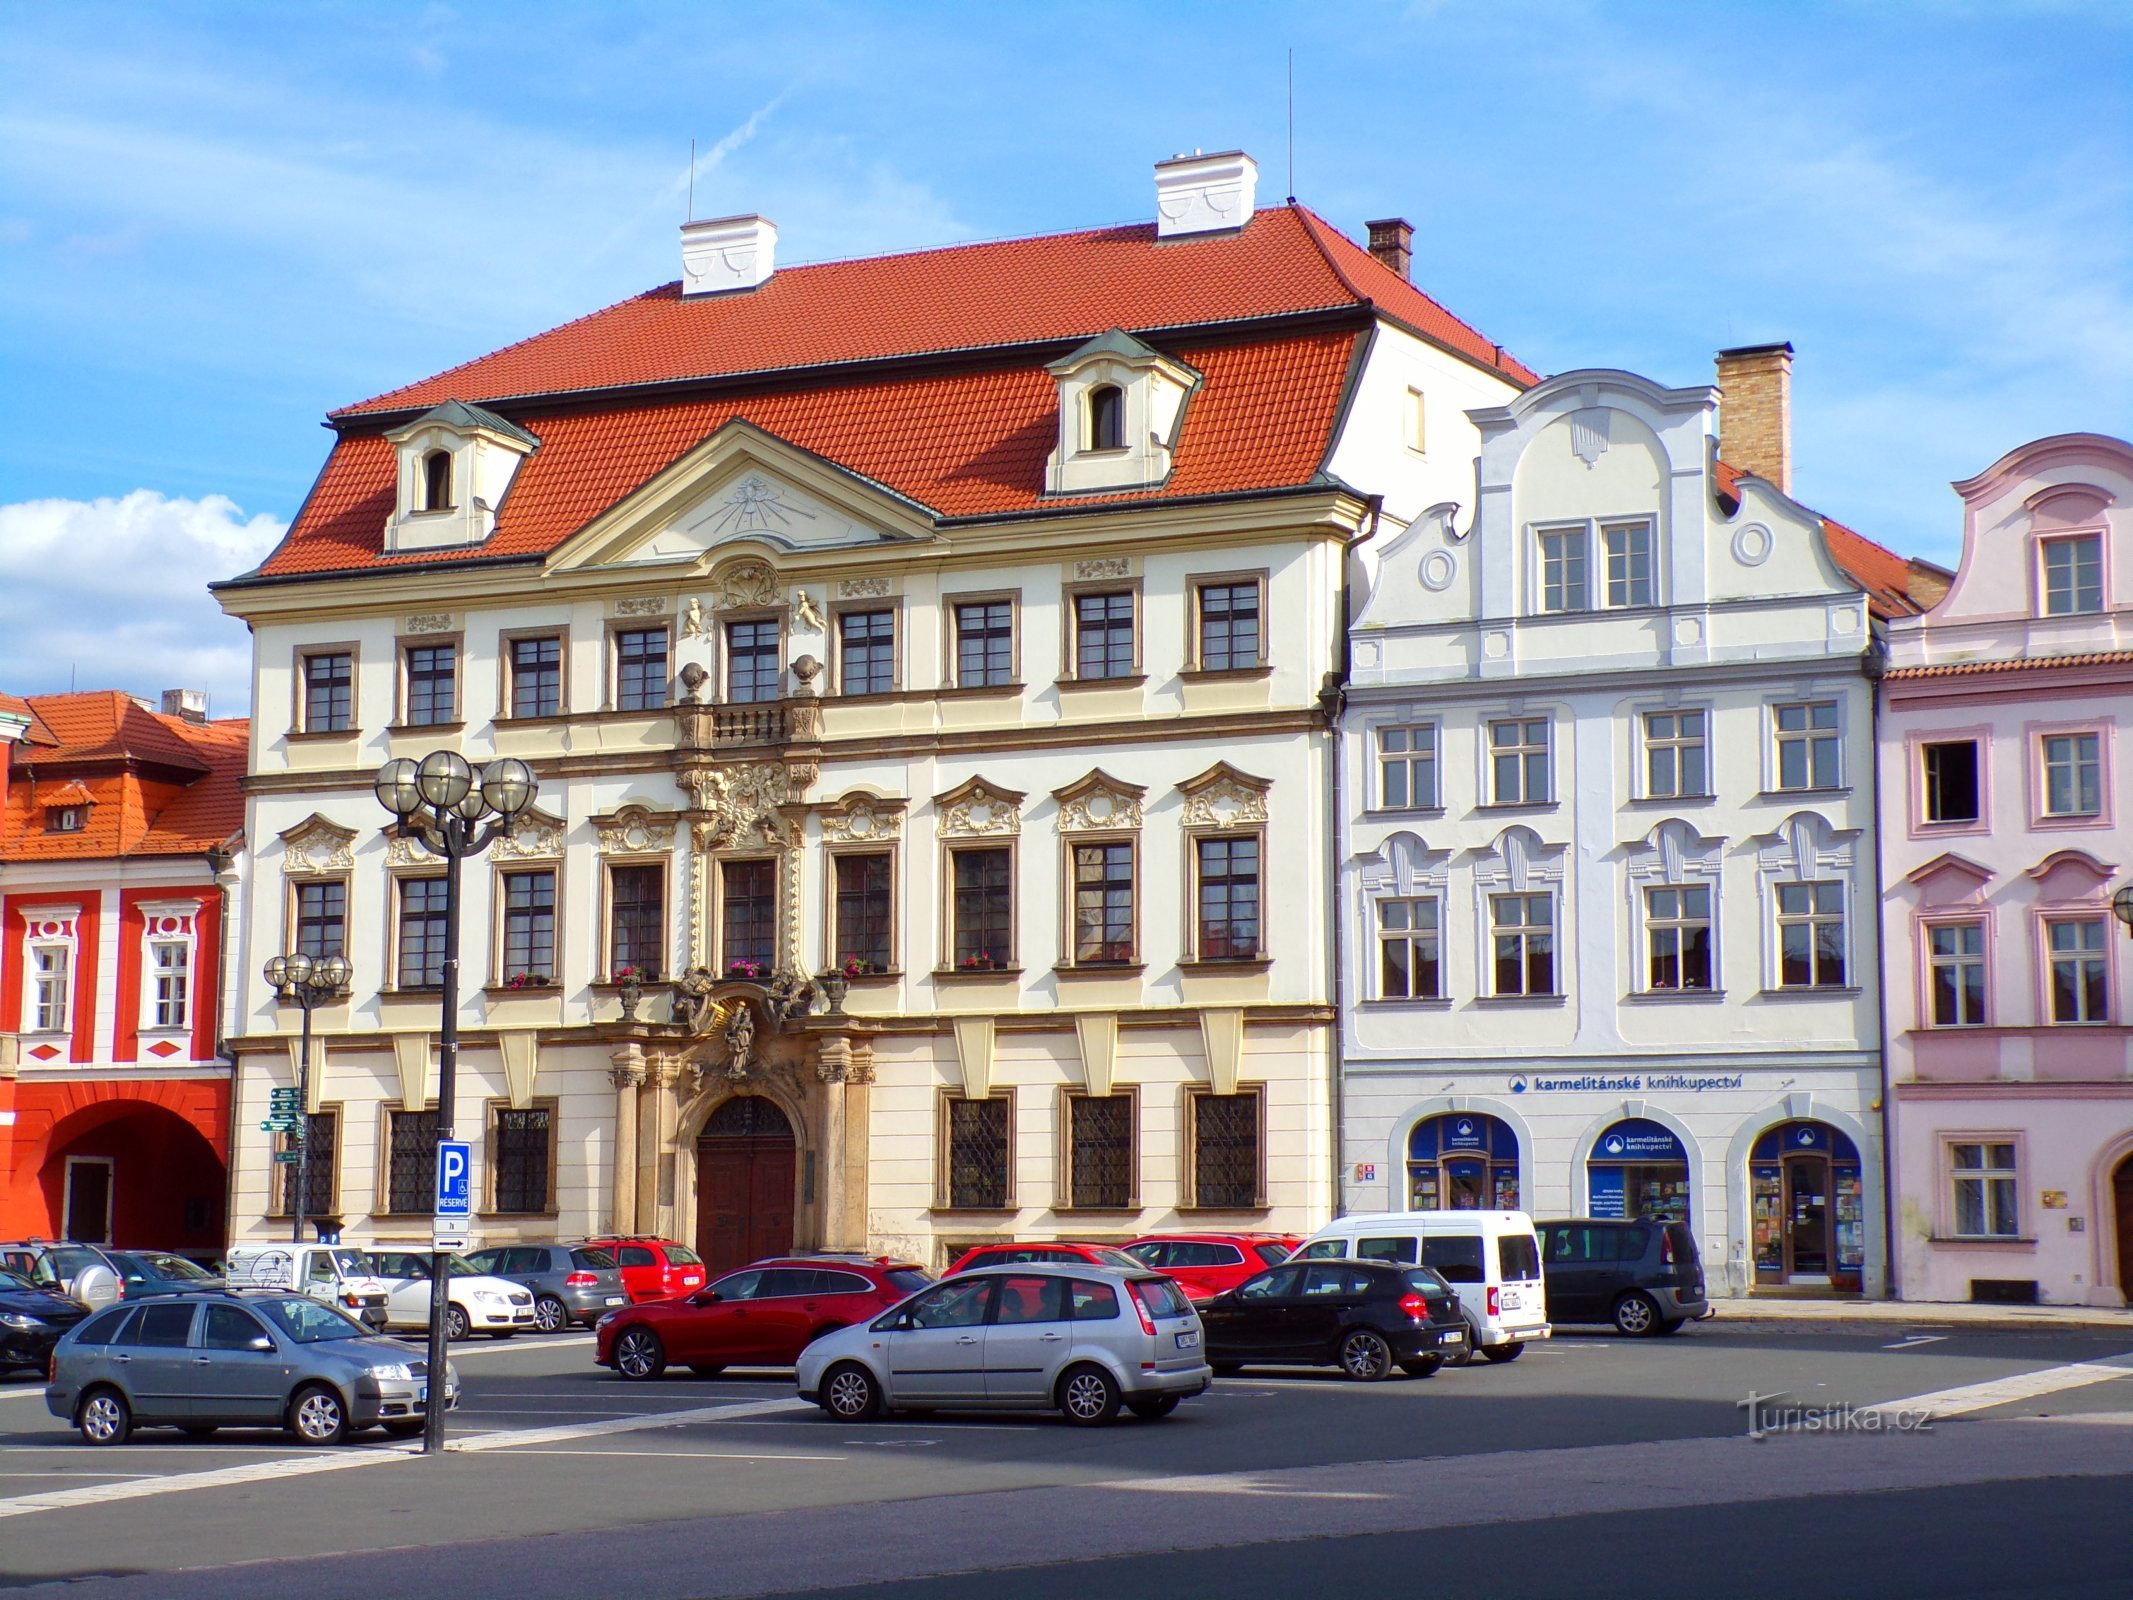 Velké náměstí No. 35-36 (Hradec Králové, 17.6.2022/XNUMX/XNUMX)